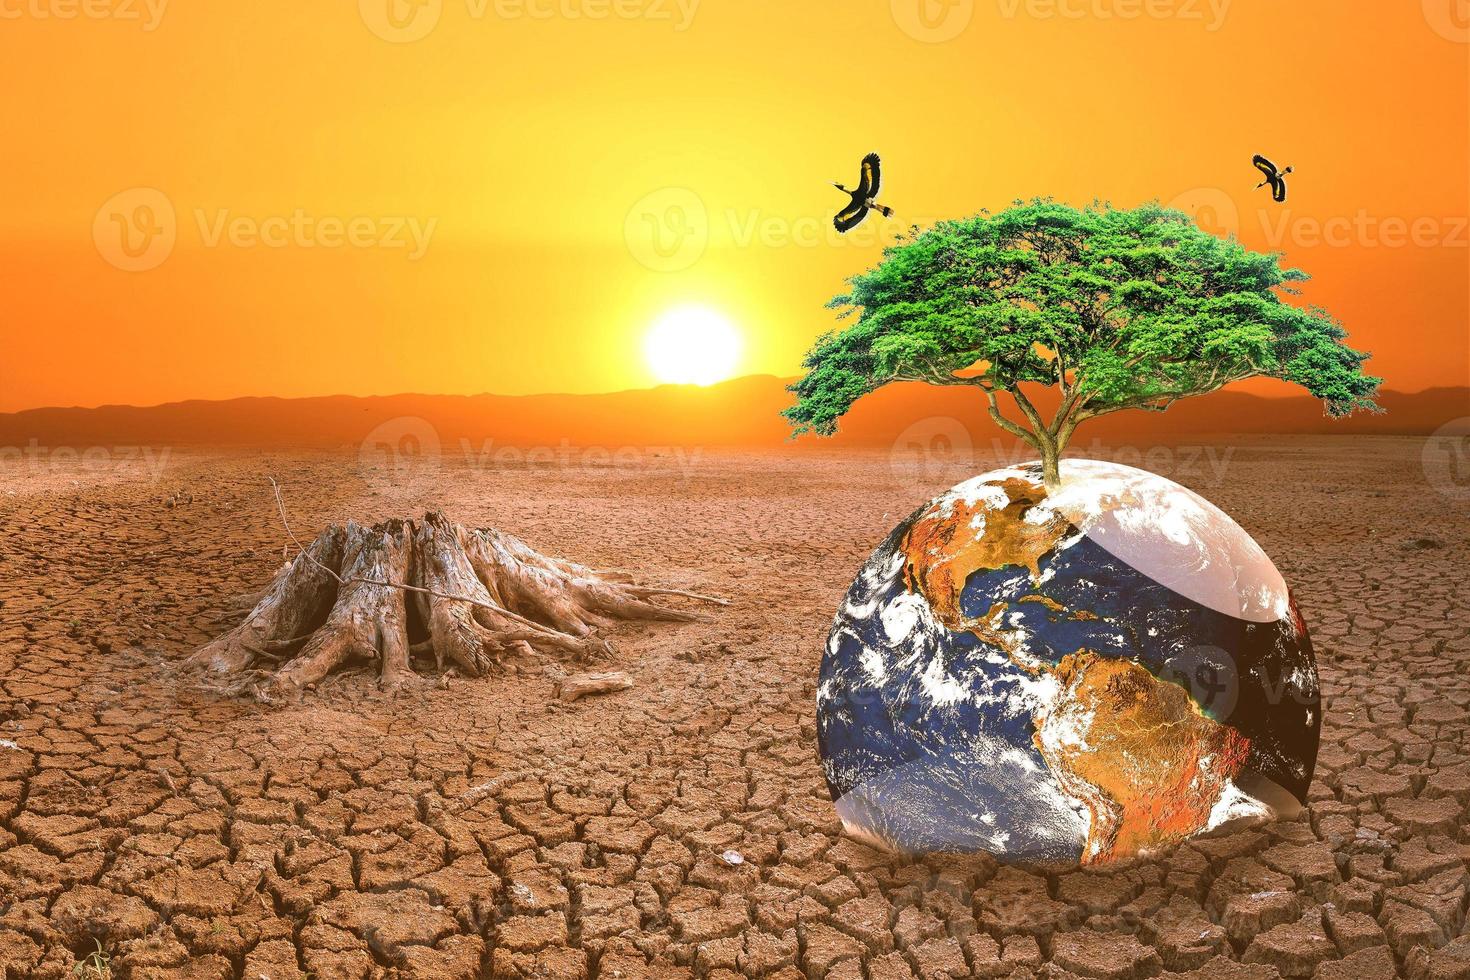 begreppet global uppvärmning och torka och fattigdom och livsmedelsbrist. torra jordar med varmt klimat har en jordklot som saknar grönyta. foto